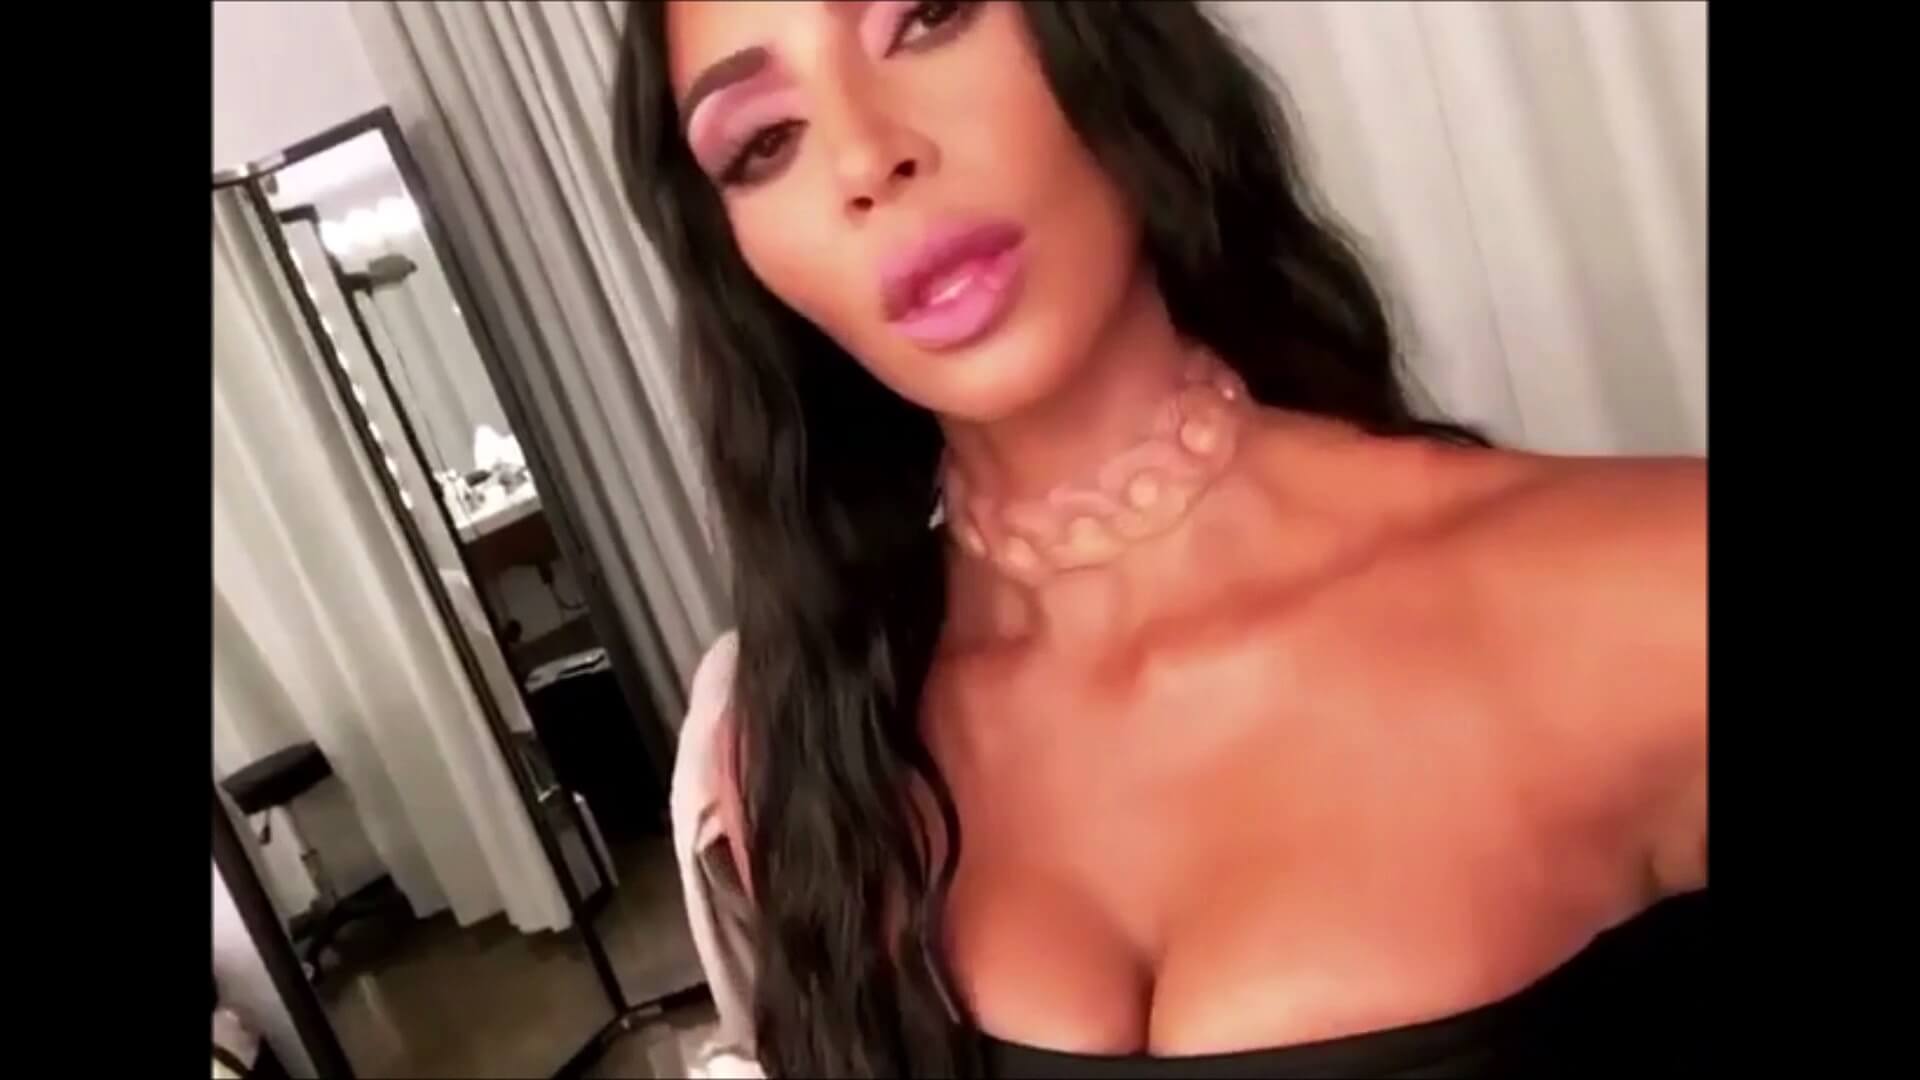 Kim Kardashian se fait implanter un collier lumineux sous la peau